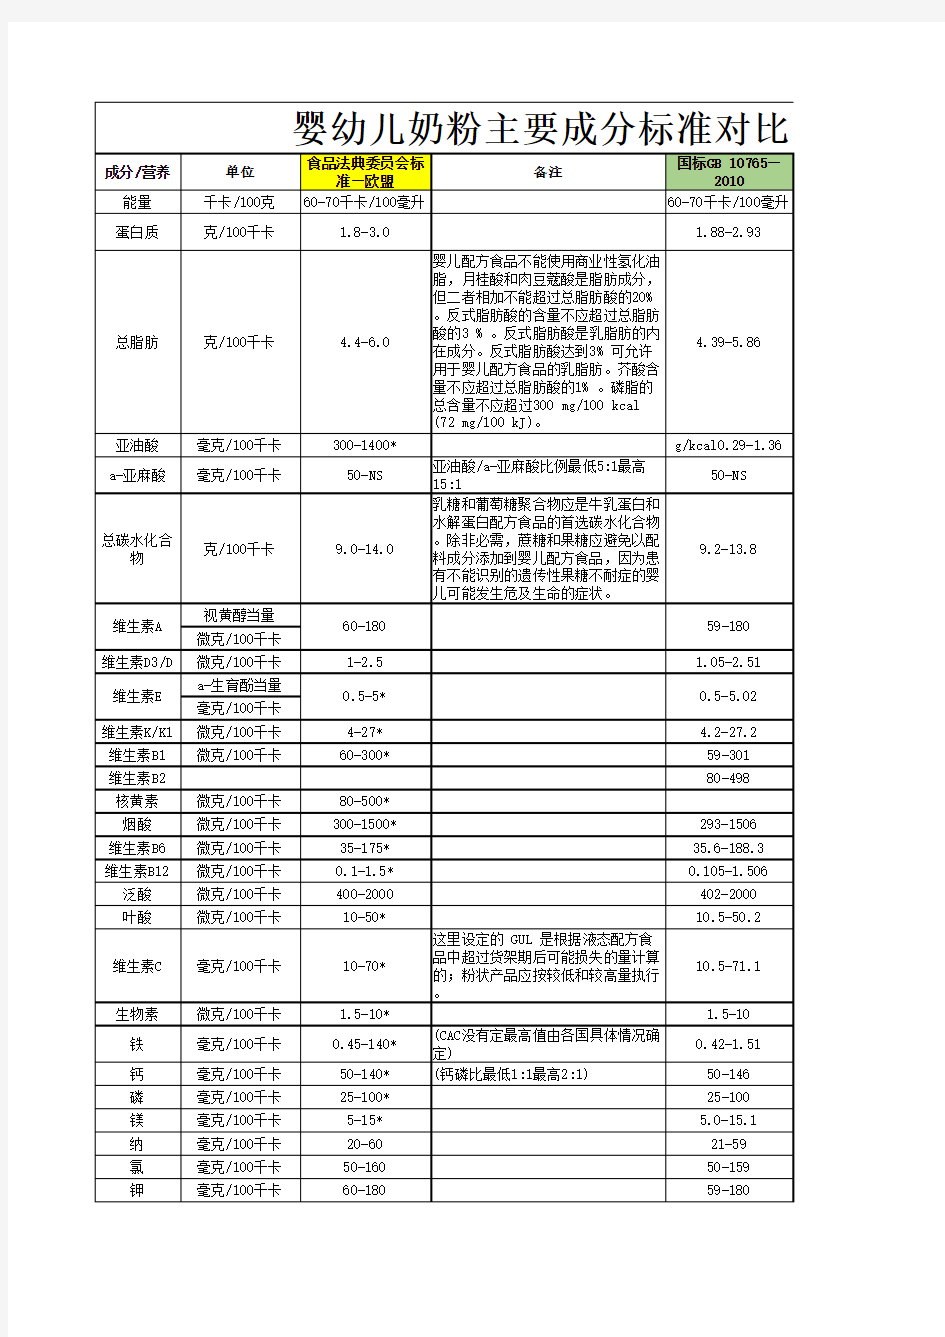 中国婴幼儿配方奶粉标准与欧盟标准比较表